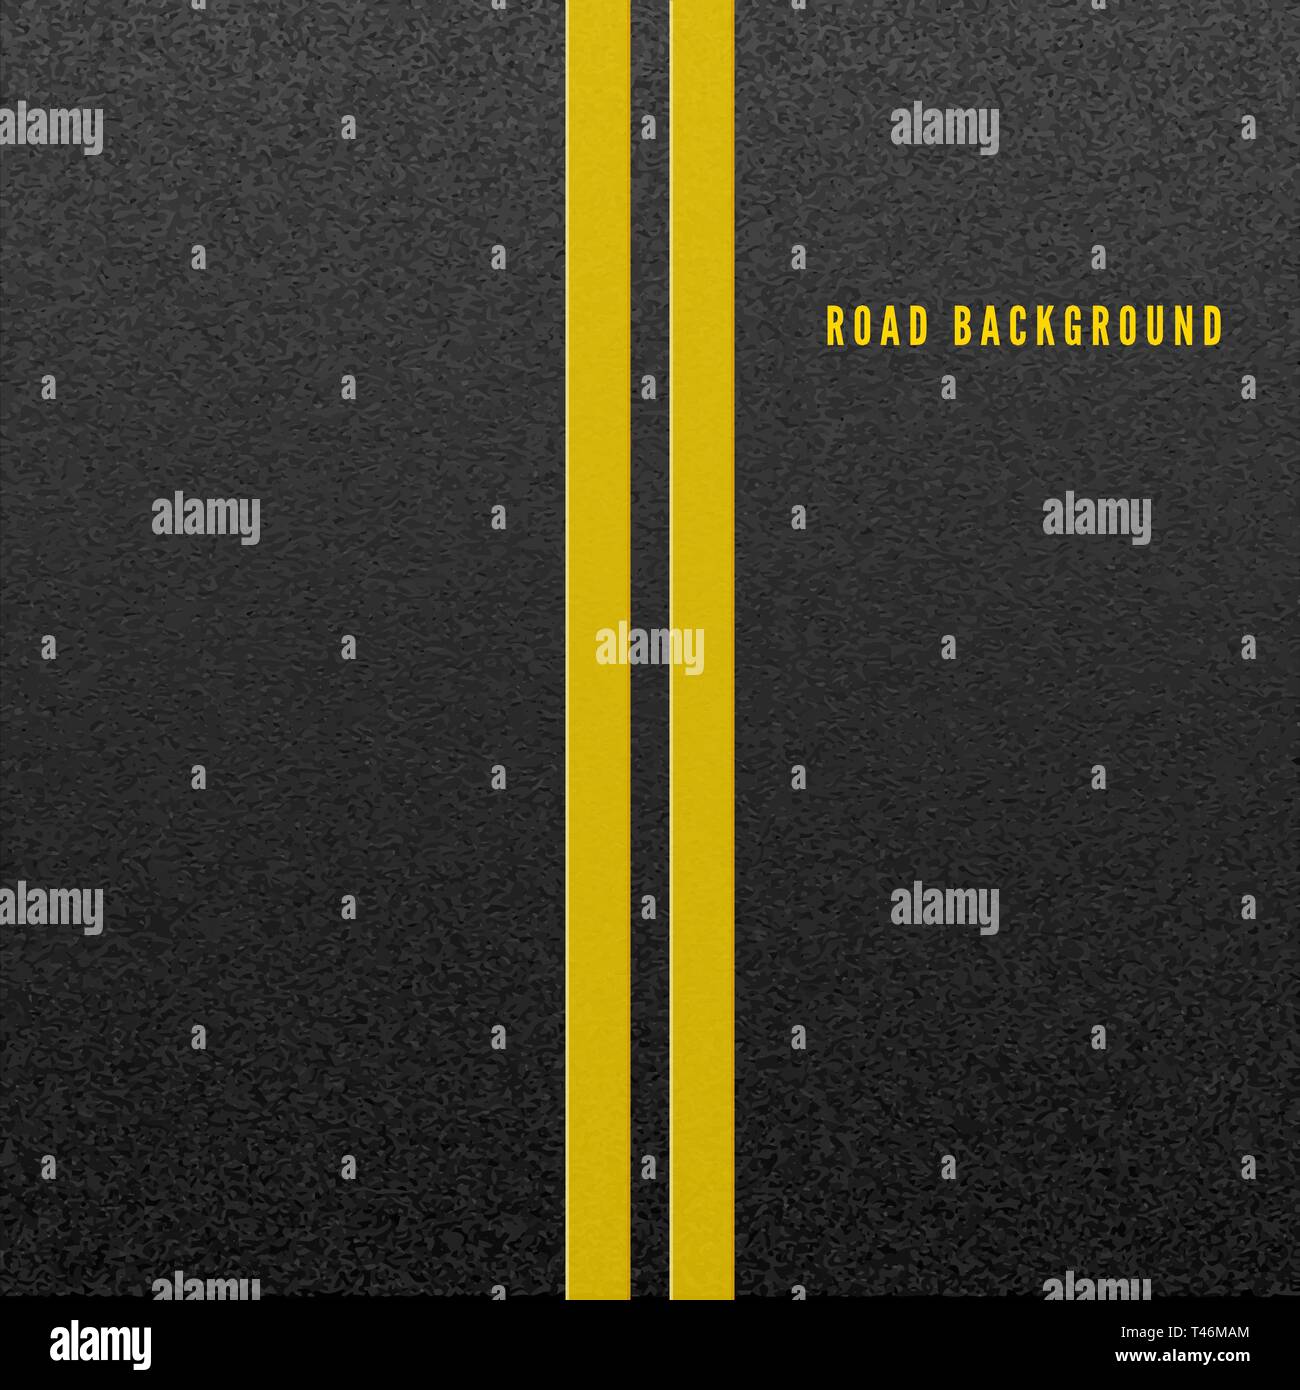 Structure de l'asphalte granulaire. Résumé Contexte la route. La texture d'asphalte avec deux ligne jaune marquage routier. Vector illustration Illustration de Vecteur